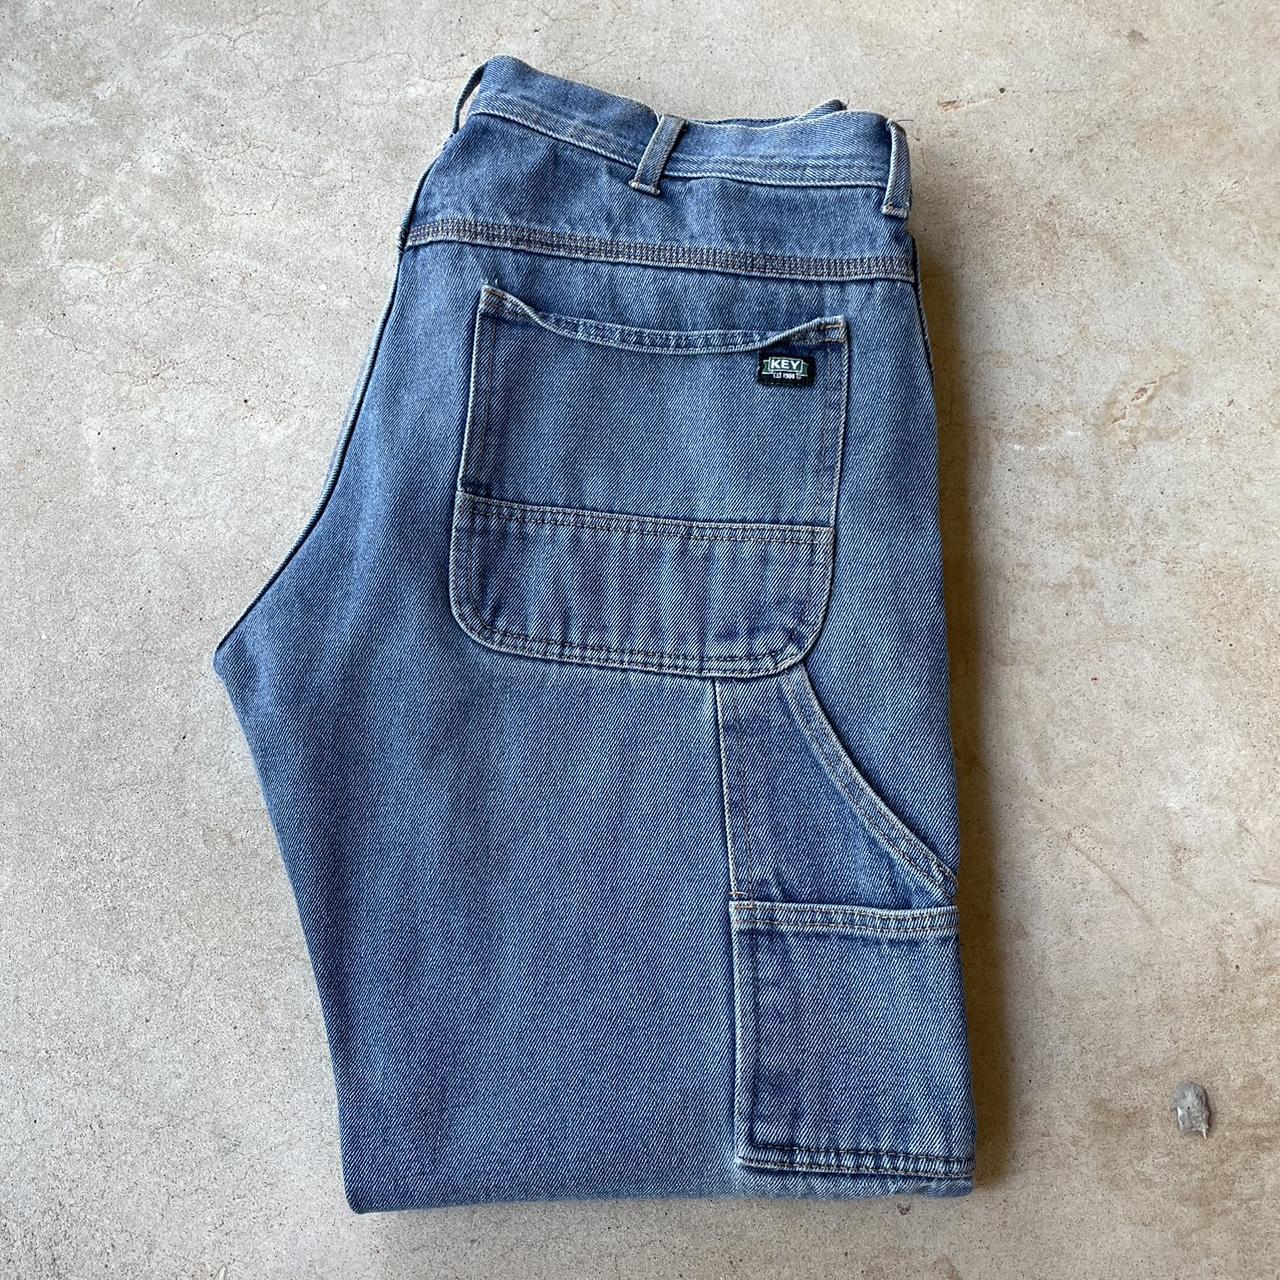 nice key carpenter jeans • excellent condition,... - Depop